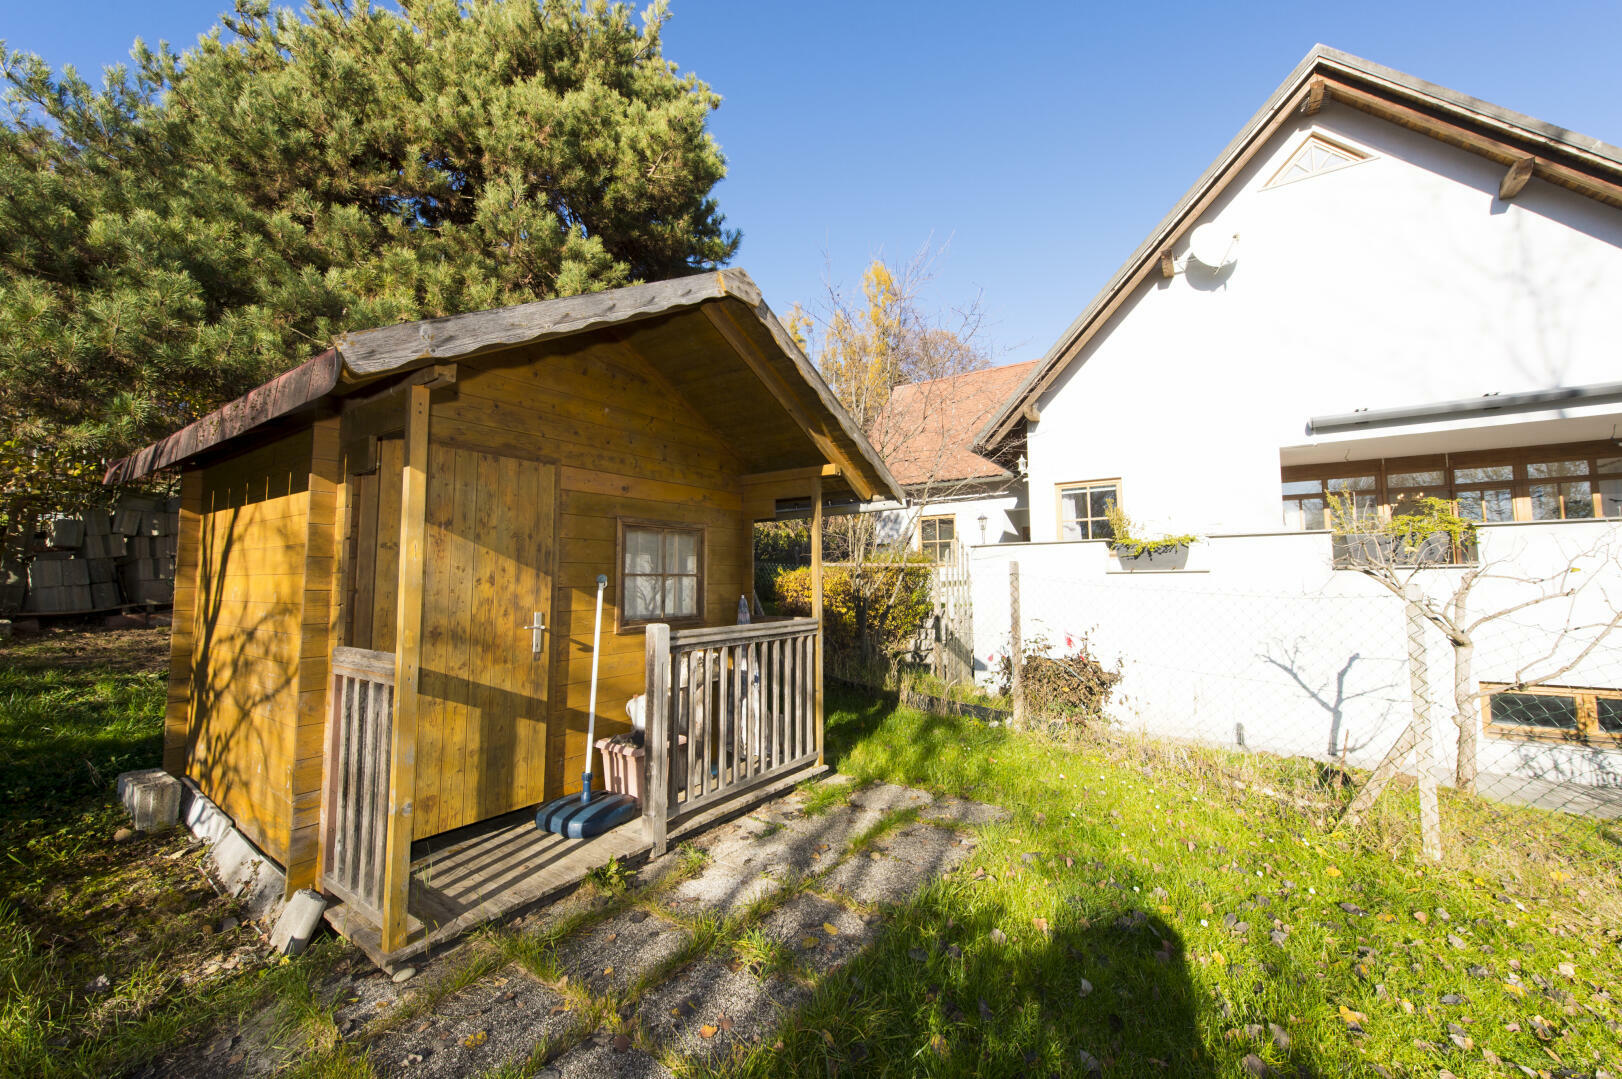 Haus zu kaufen: Kogelbuch 6, 8302 Nestelbach bei Graz - Einfamilienhaus Graz Umgebung  550